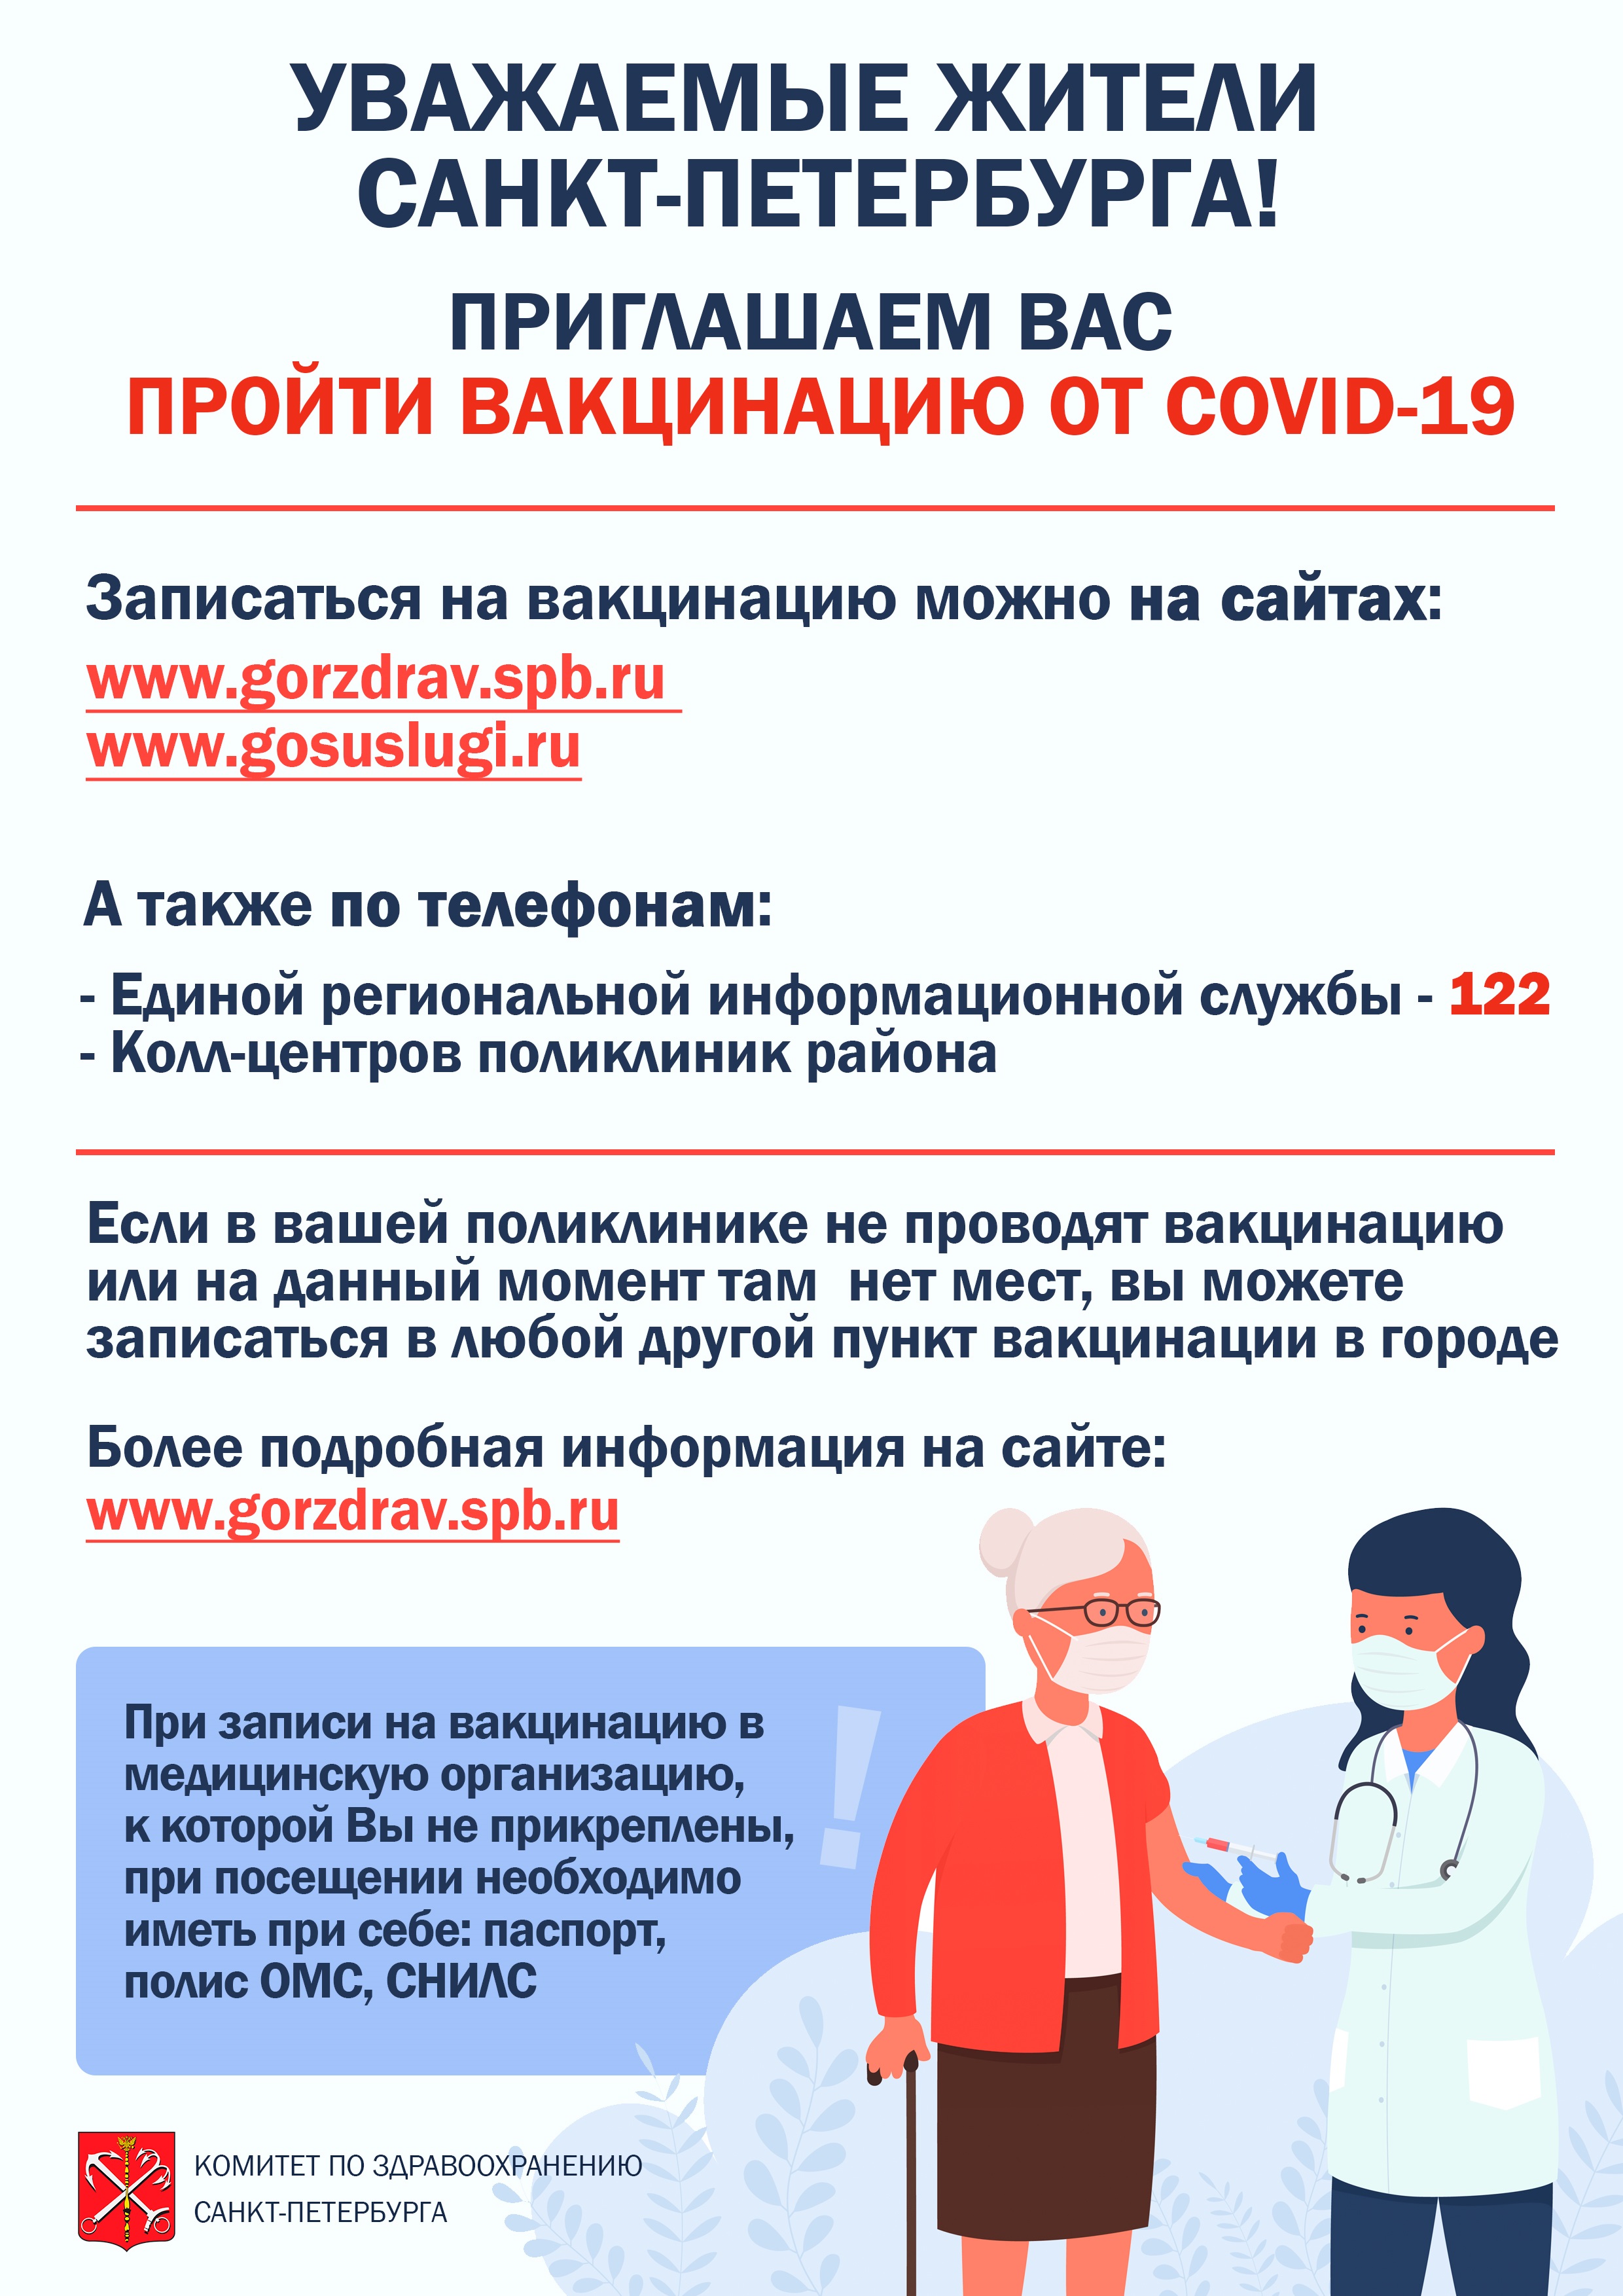 Буклет с информацией по записи на вакцинацию (соответствует тексту новости)